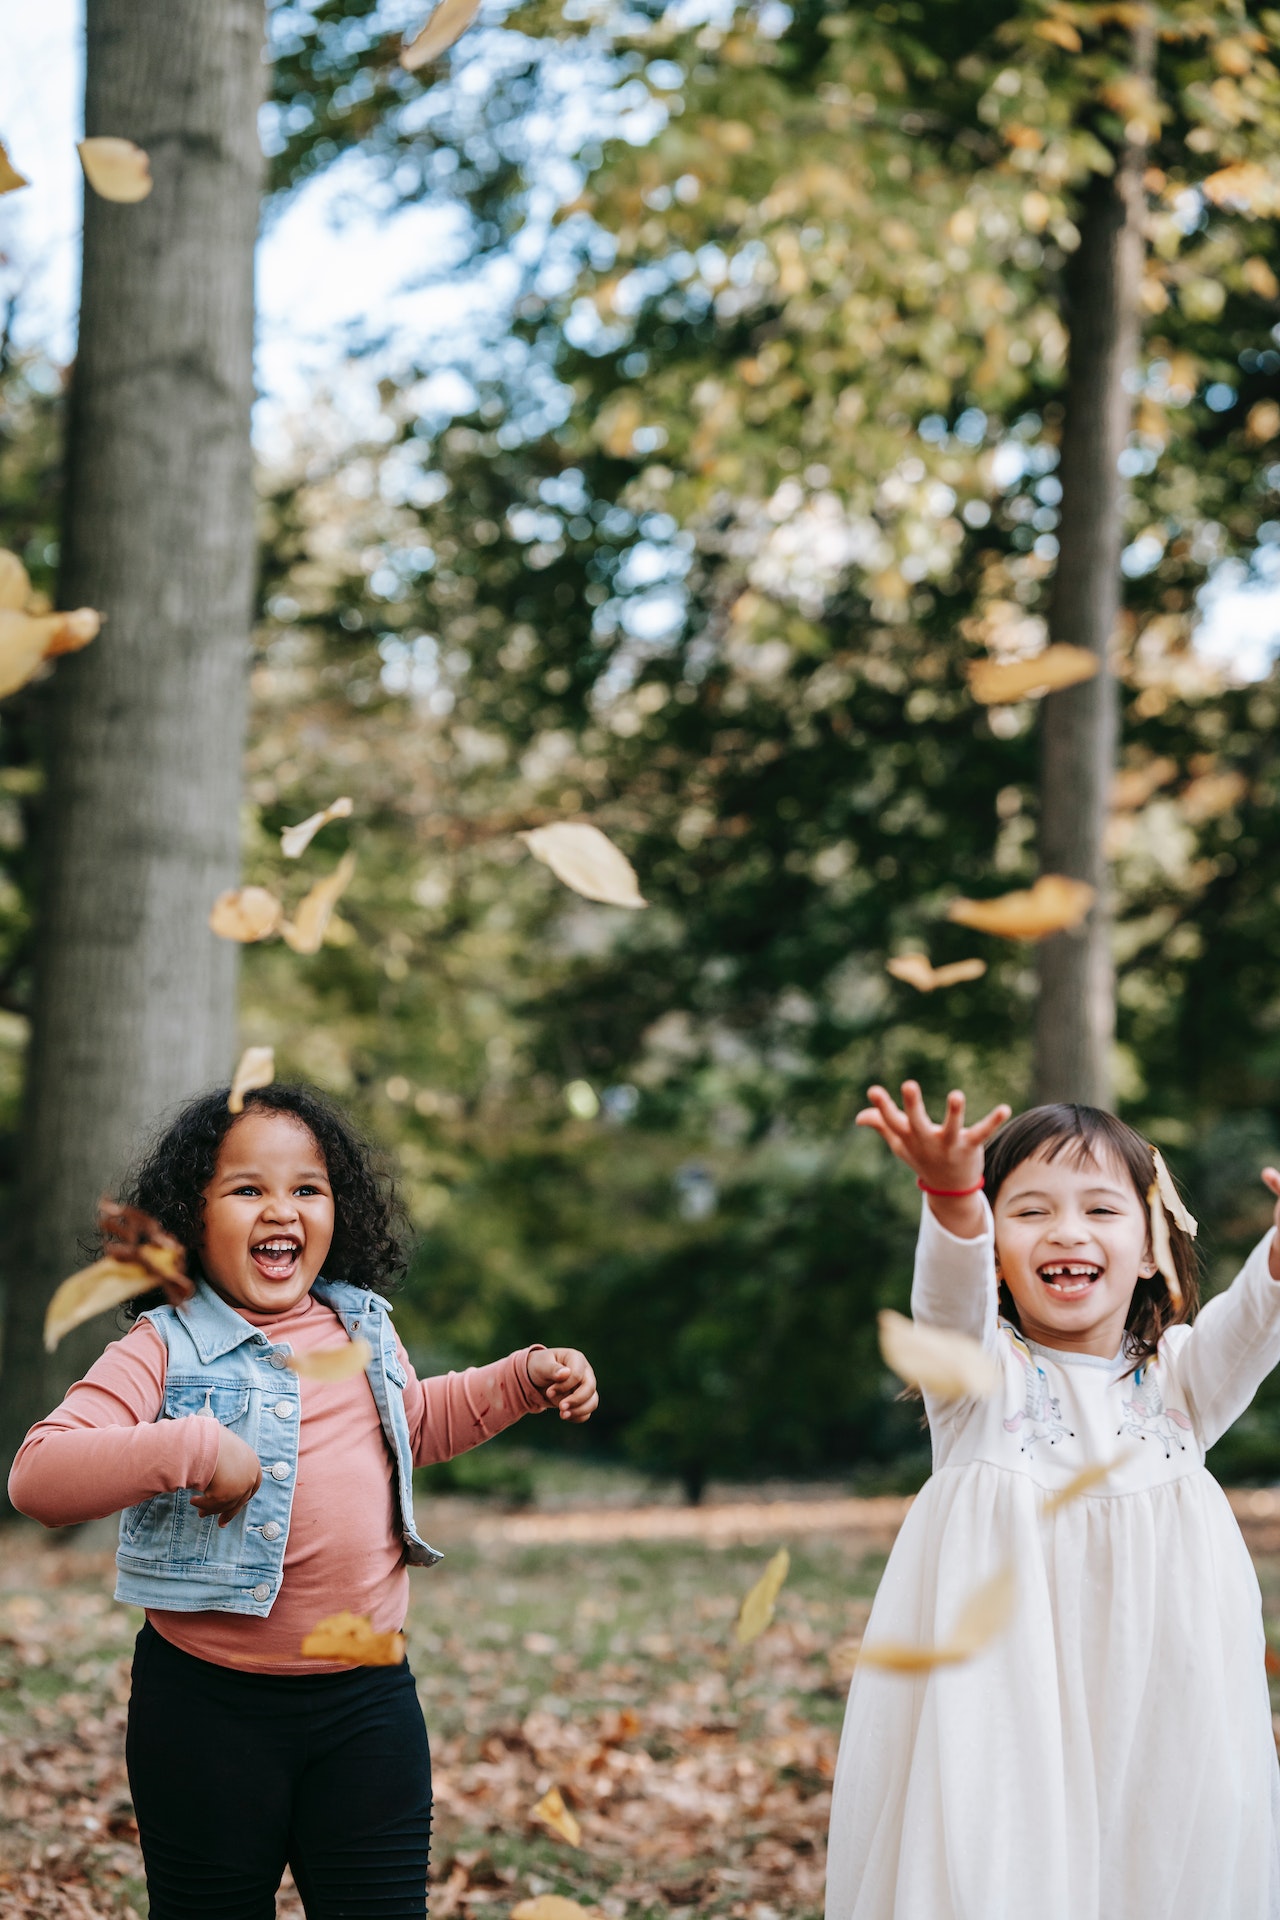 Twee meisjes spelen in de natuur, blij en vrolijk met bladeren aan het spelen